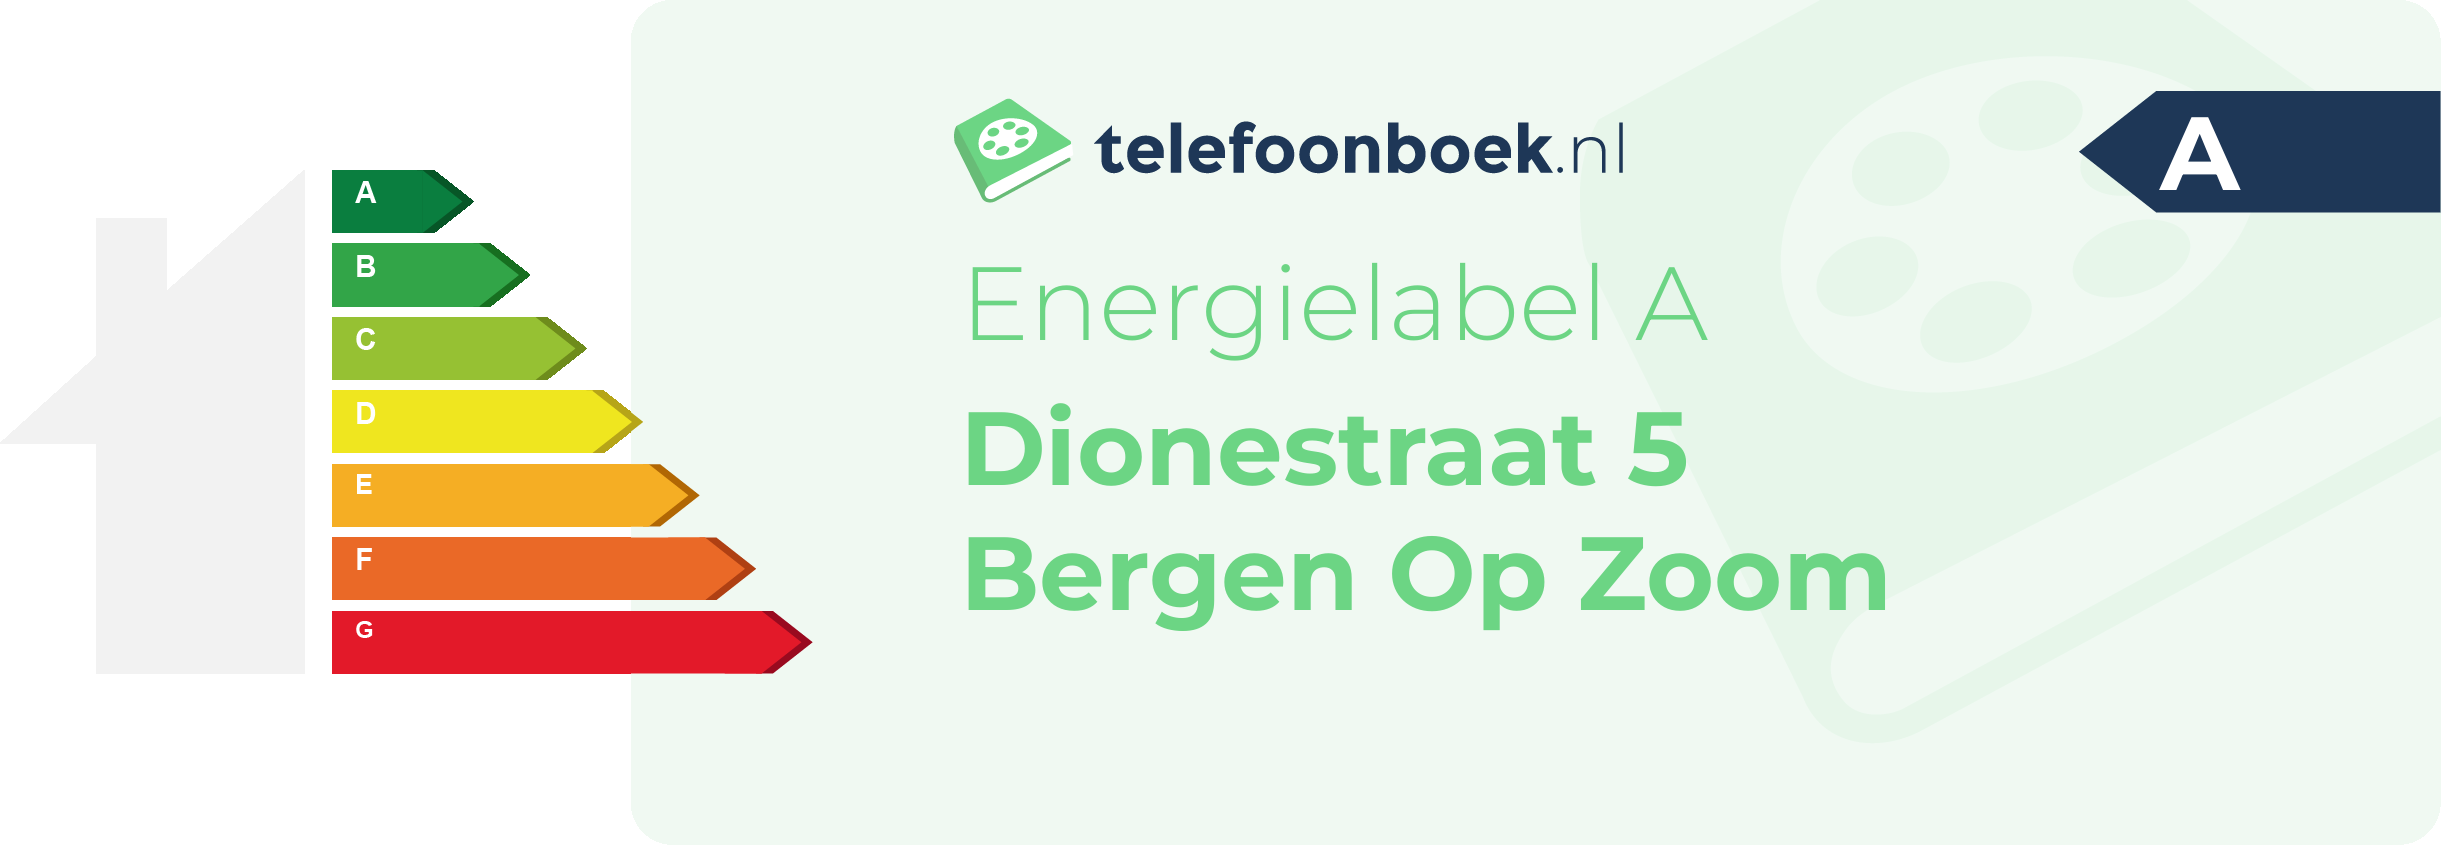 Energielabel Dionestraat 5 Bergen Op Zoom